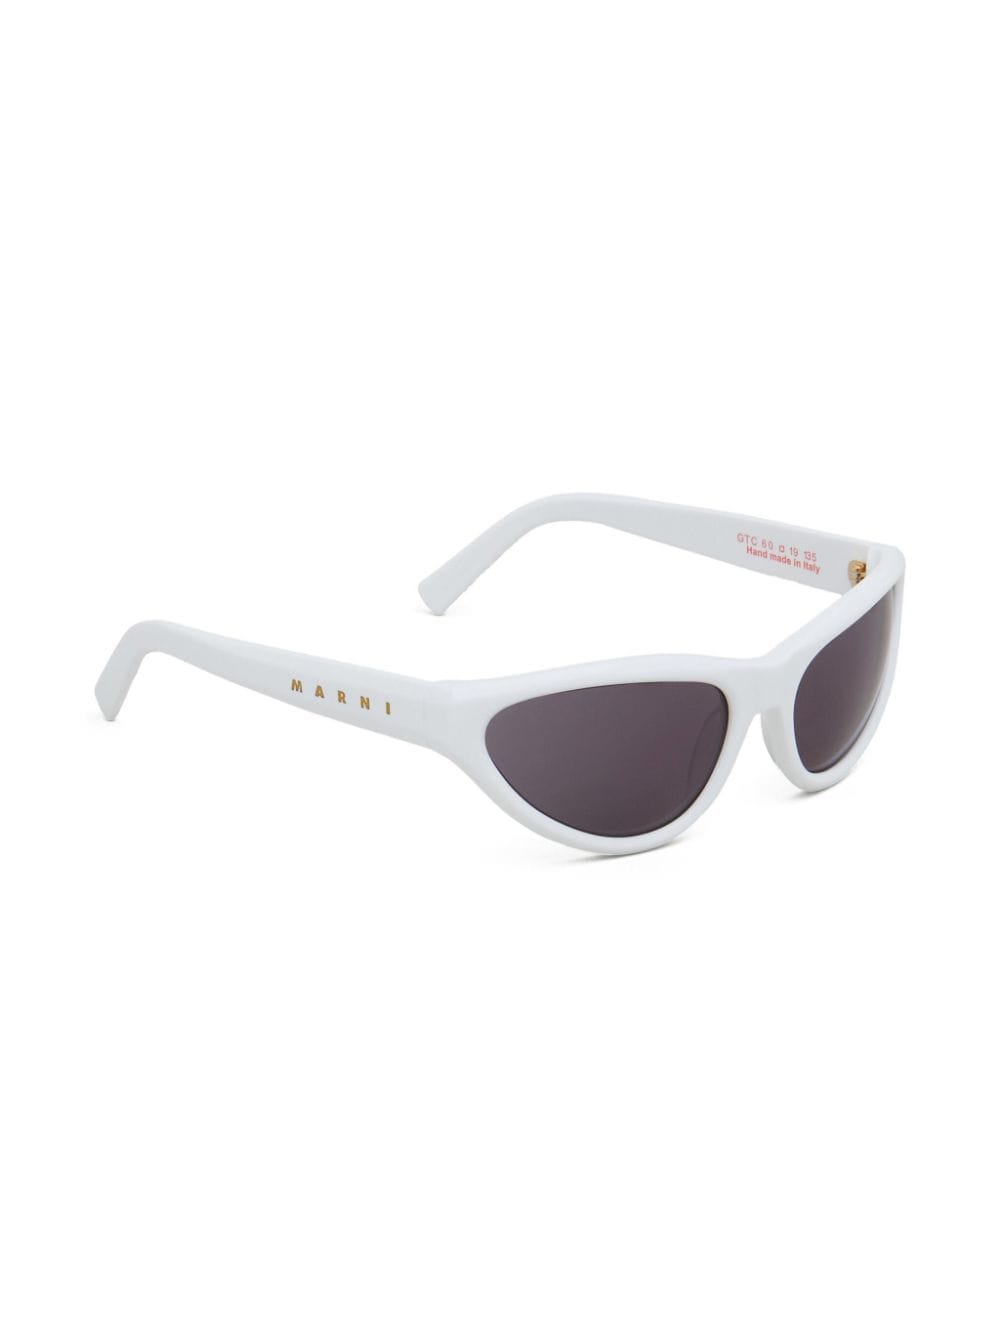 Marni Eyewear Maverick zonnebril met cat-eye montuur - Wit